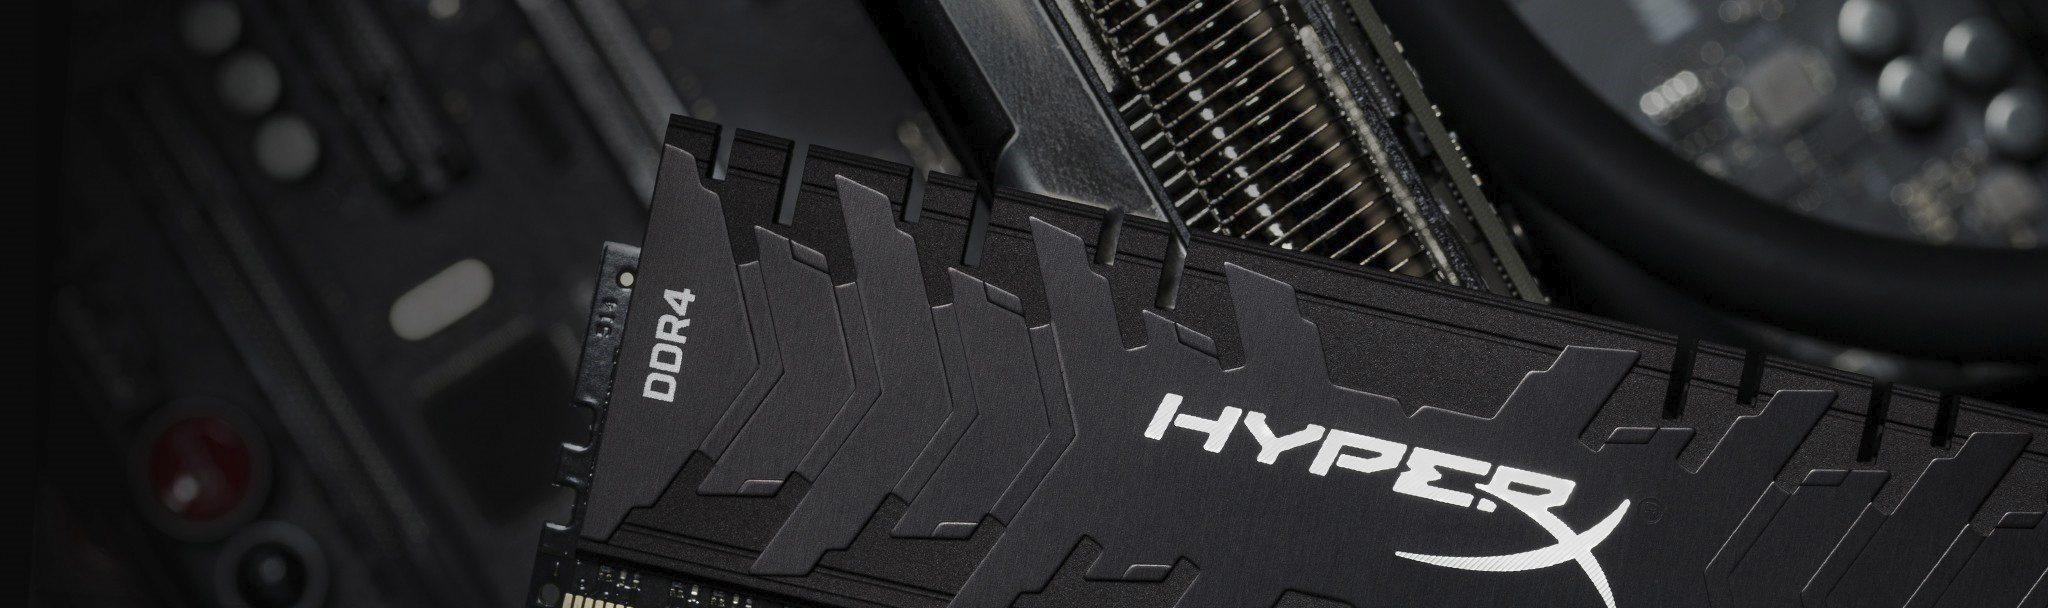 HyperX 5300 MHz’de çalışan DDR4 RAM’lerini 1245 dolardan satışa sundu